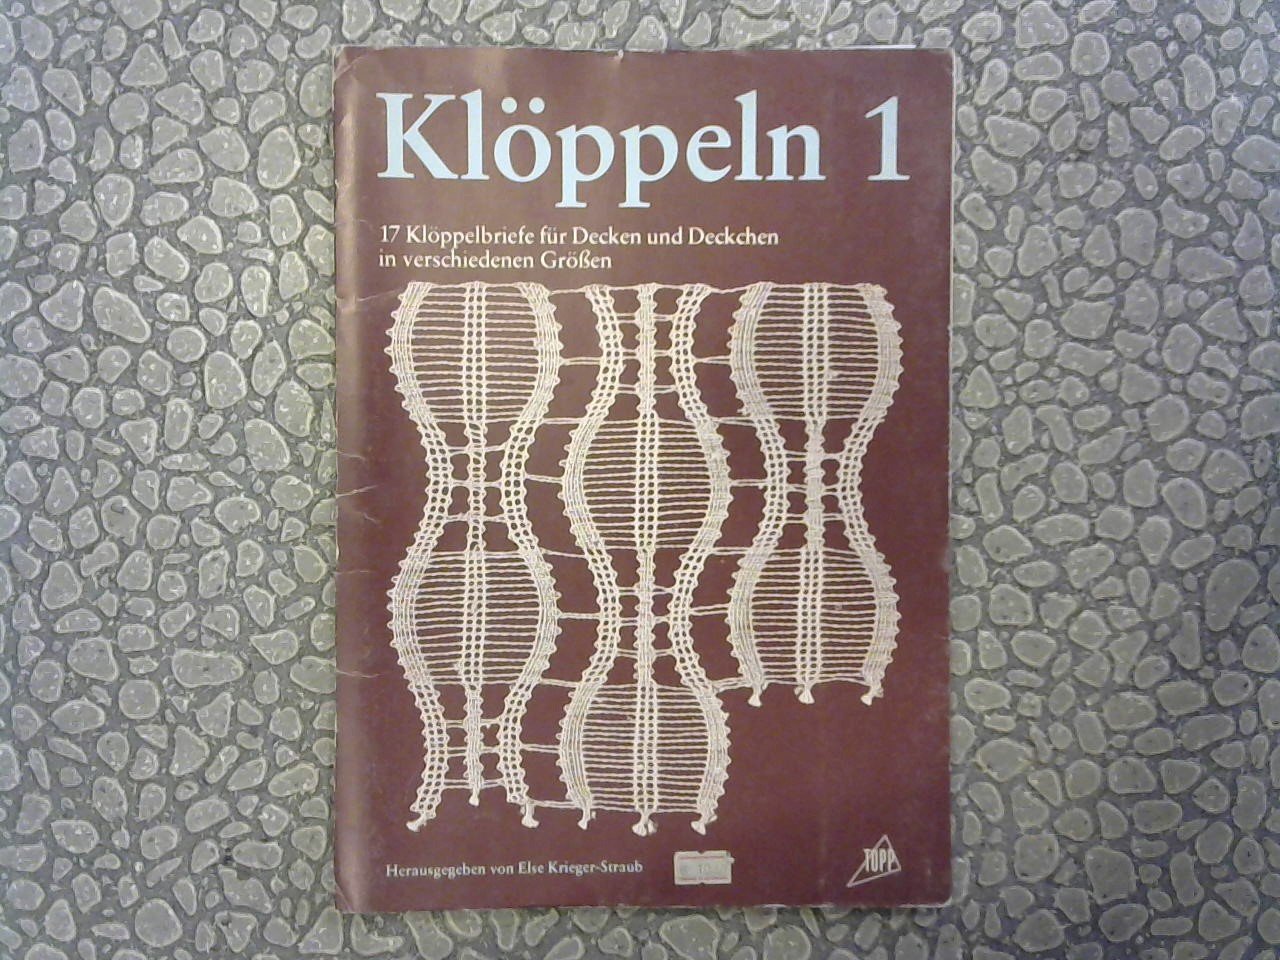 Krieger-Straub, Else (Hrsg.) - Klöppeln 1. 17 Klöppelbriefe für Decken und Deckchen in verschiedenen Grösse